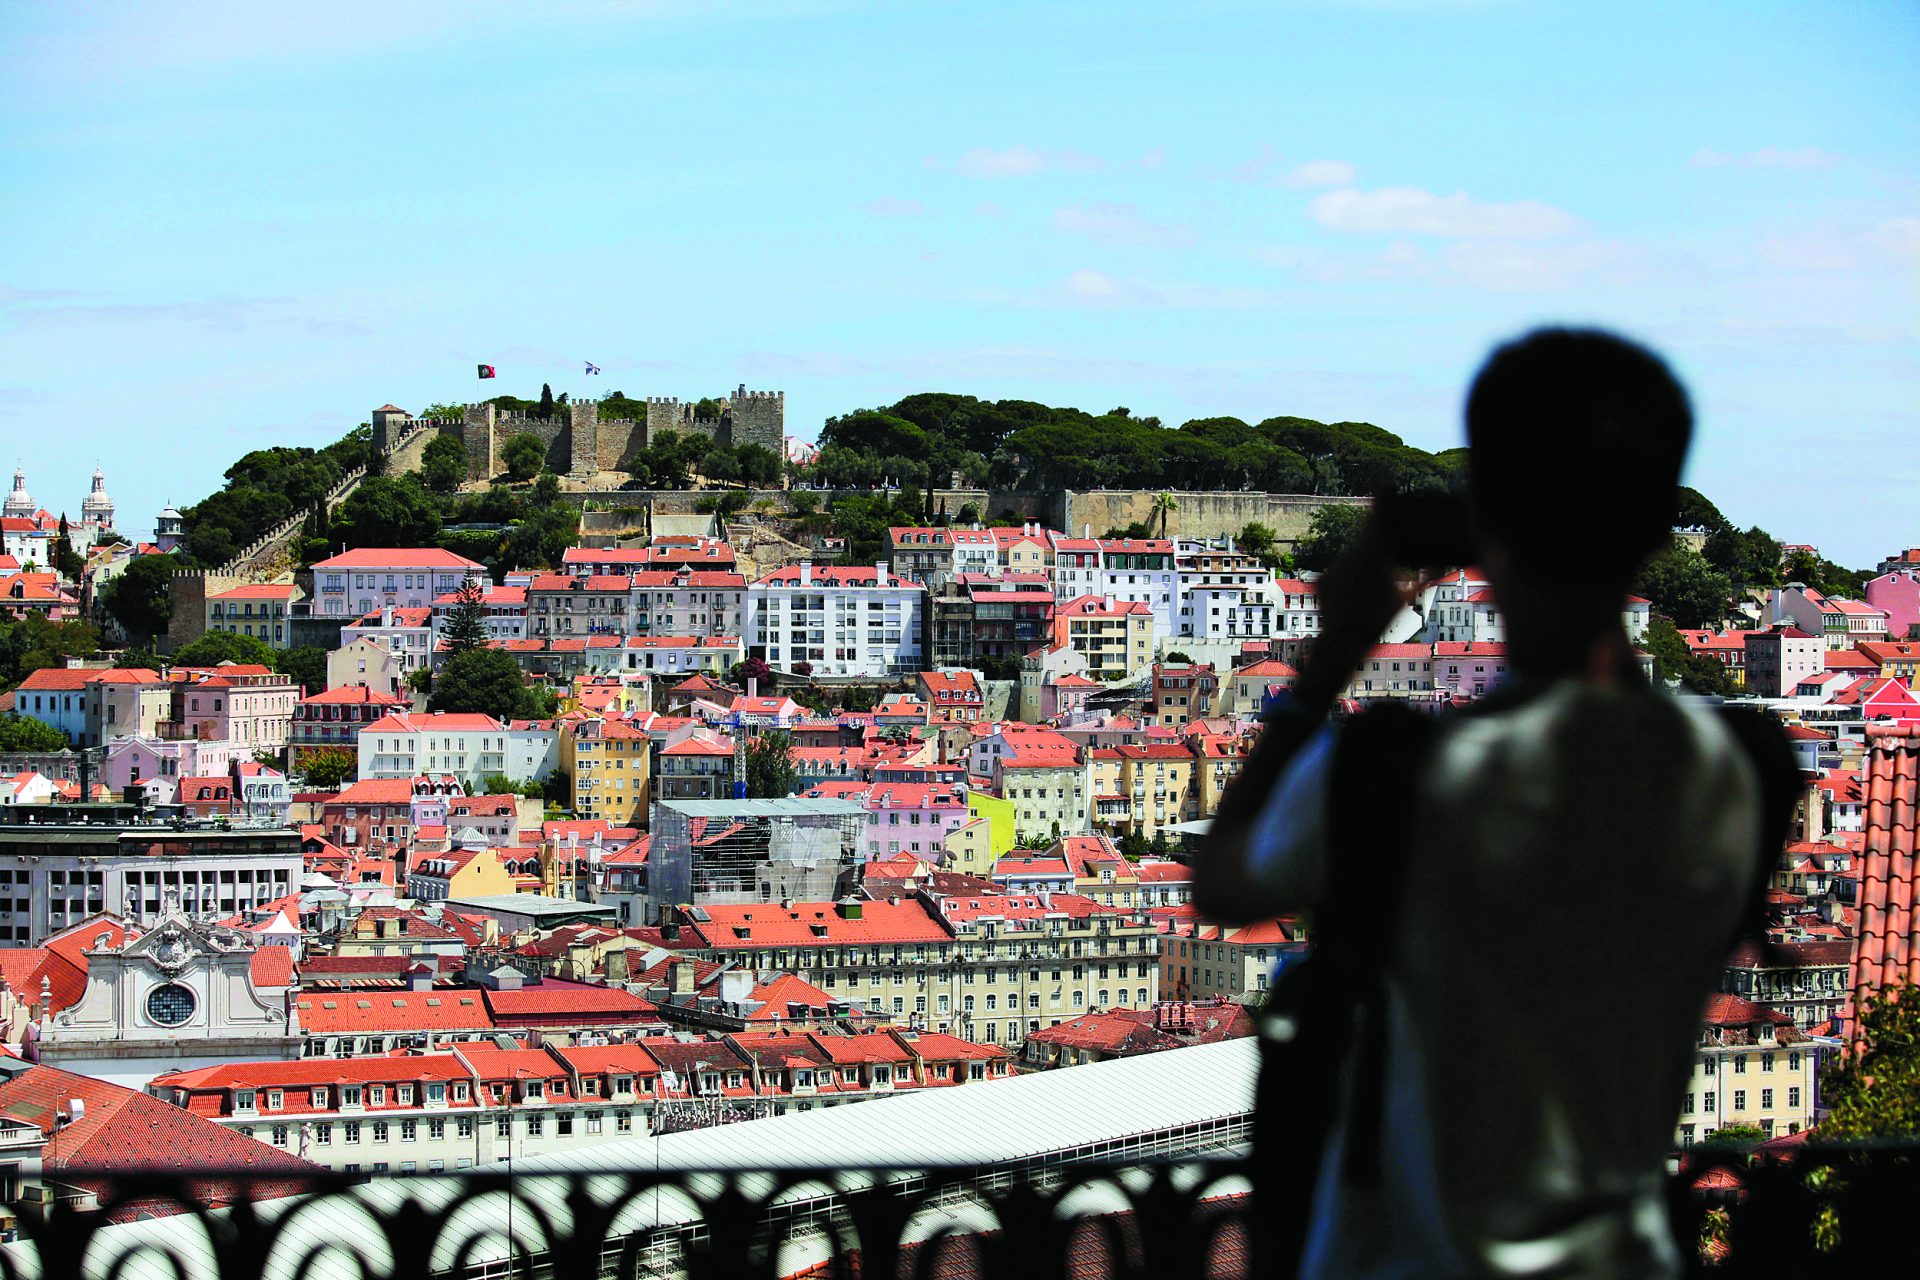 Taxa turística. Só a Airbnb entregou 1,7 milhões à câmara de Lisboa